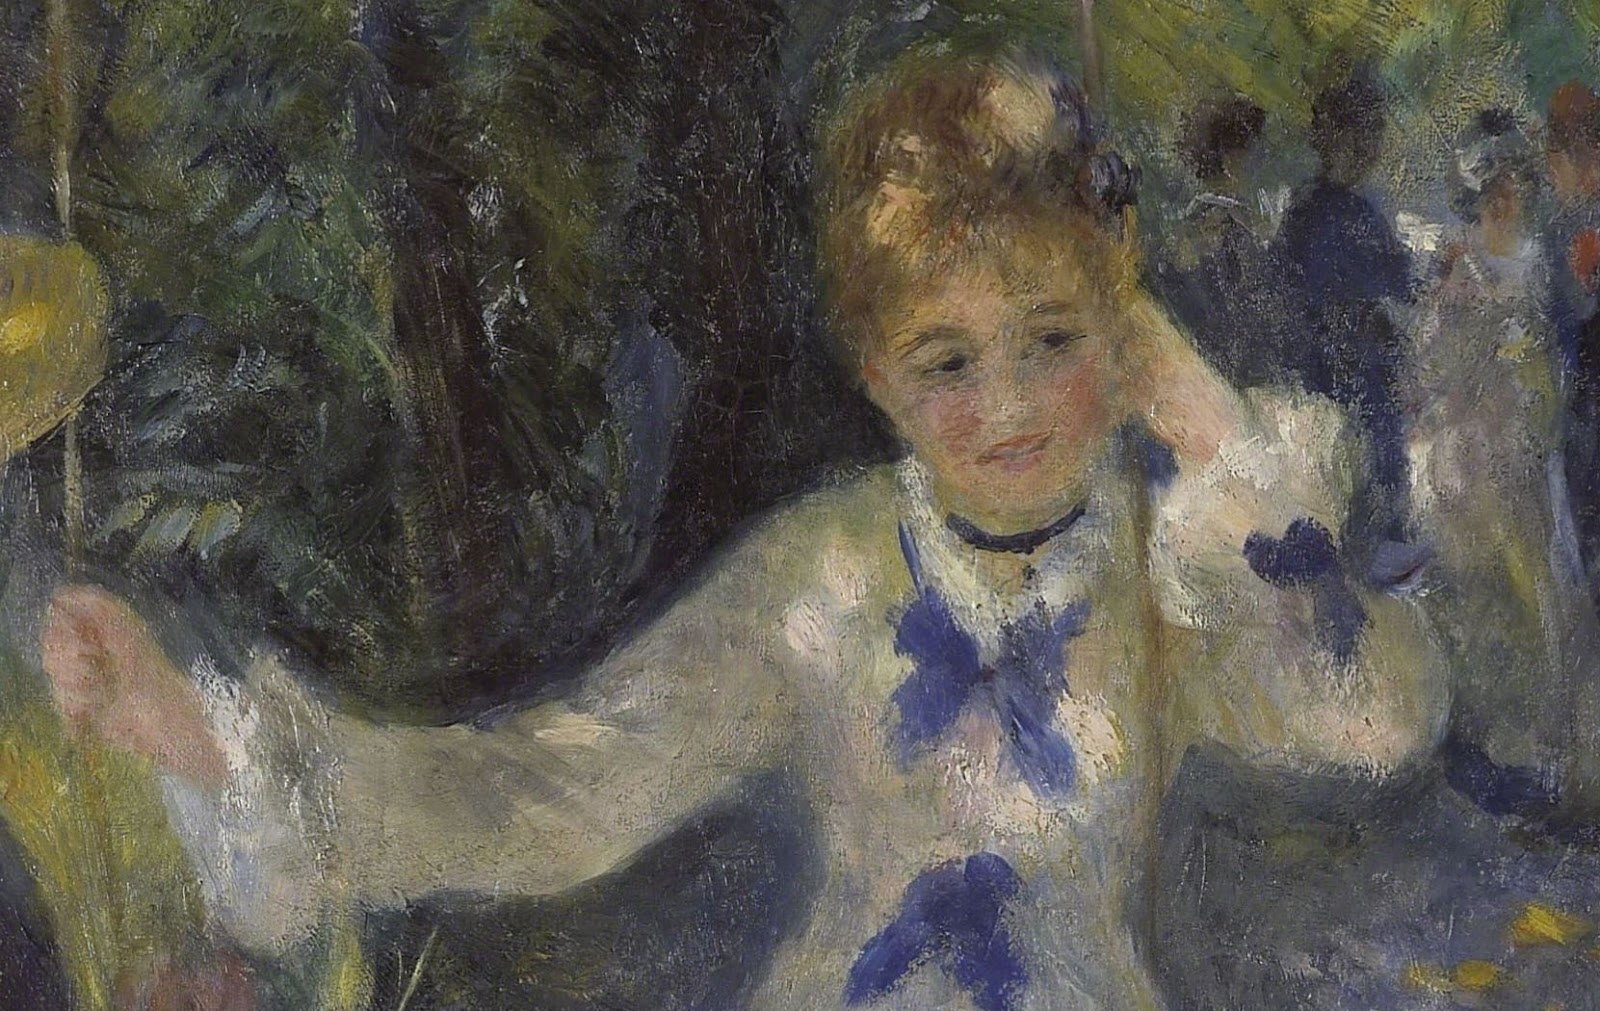 Pierre+Auguste+Renoir-1841-1-19 (691).JPG